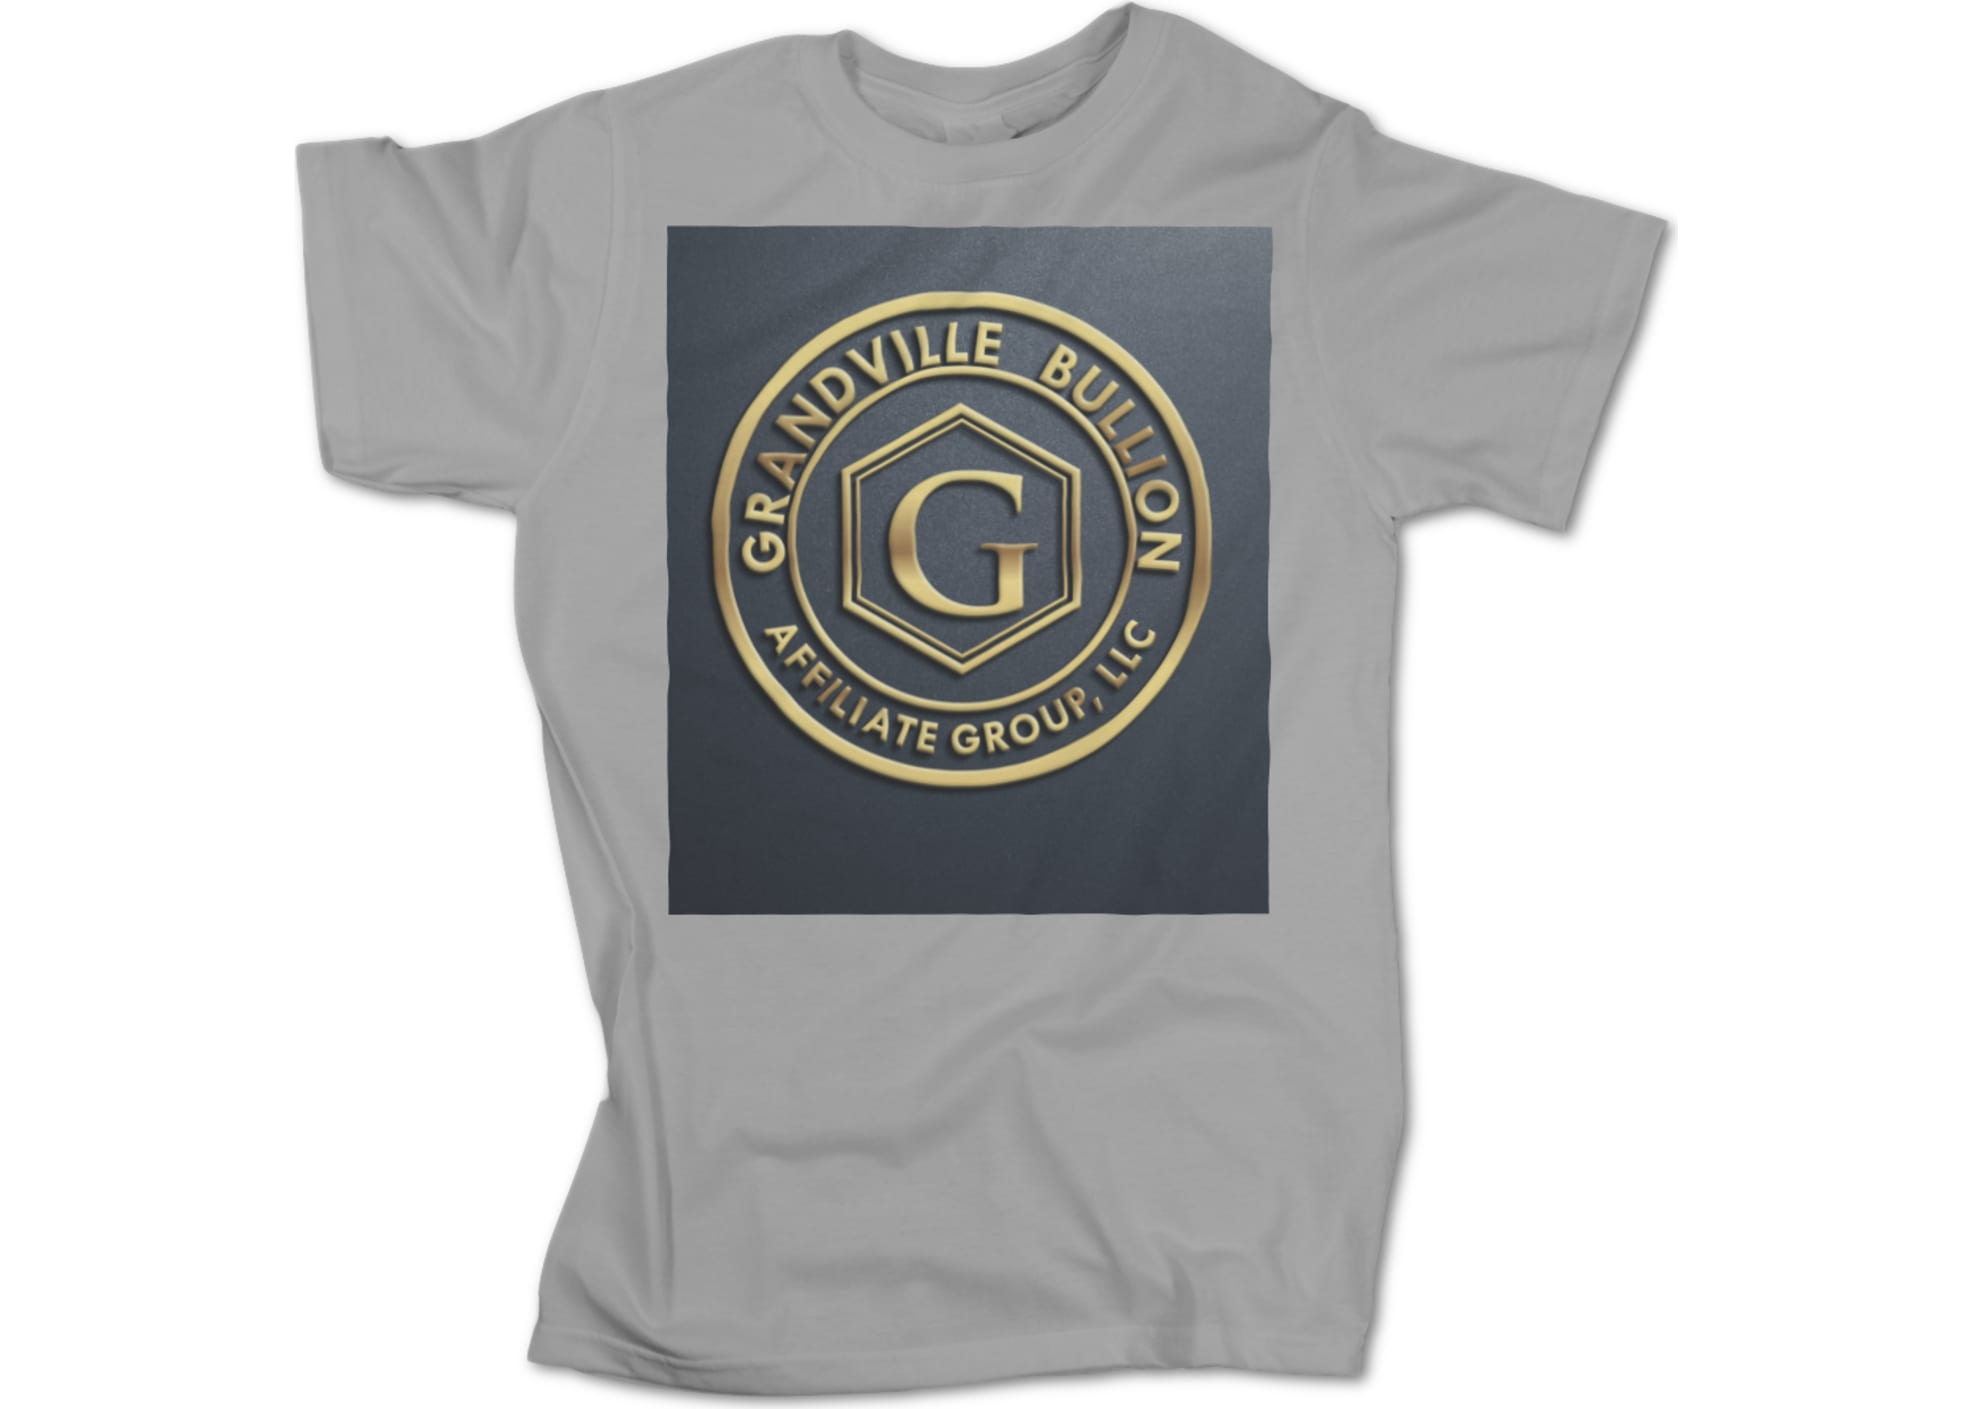 Grandville bullion group llc gray and gold  1629991104